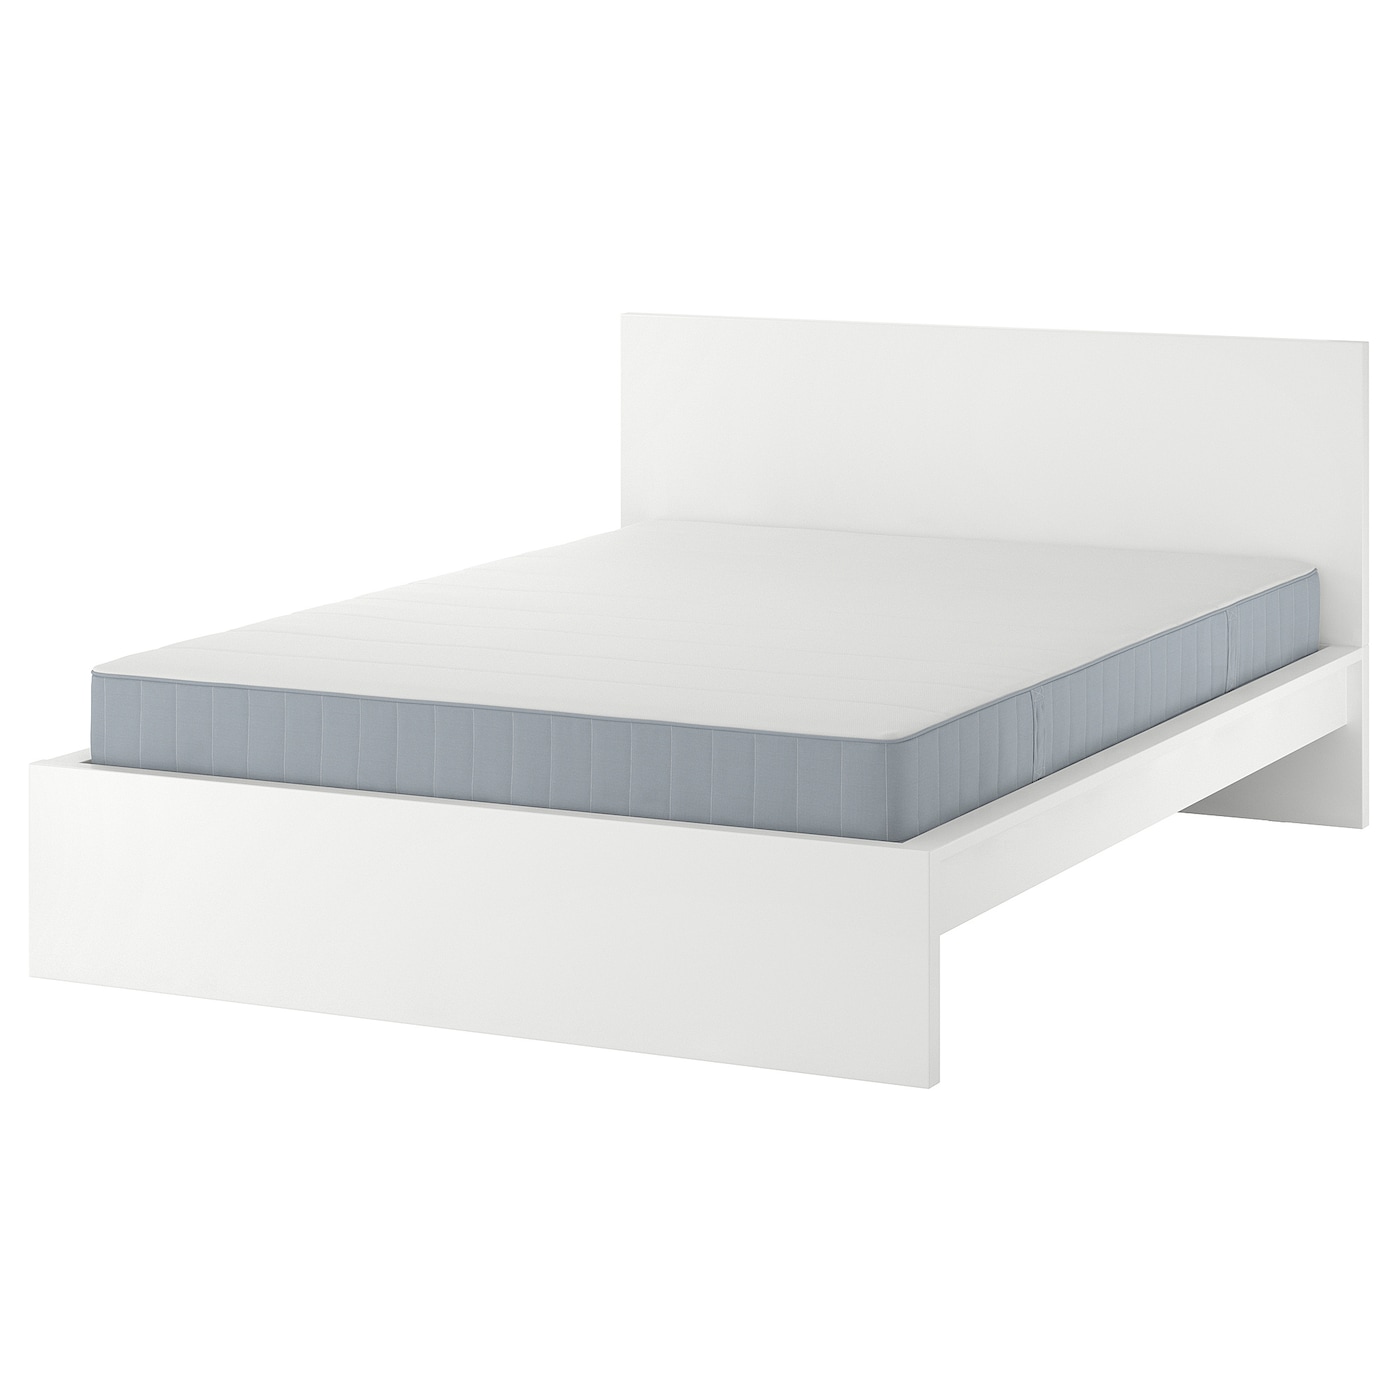 Кровать - IKEA MALM, 200х160 см, матрас жесткий, белый, МАЛЬМ ИКЕА